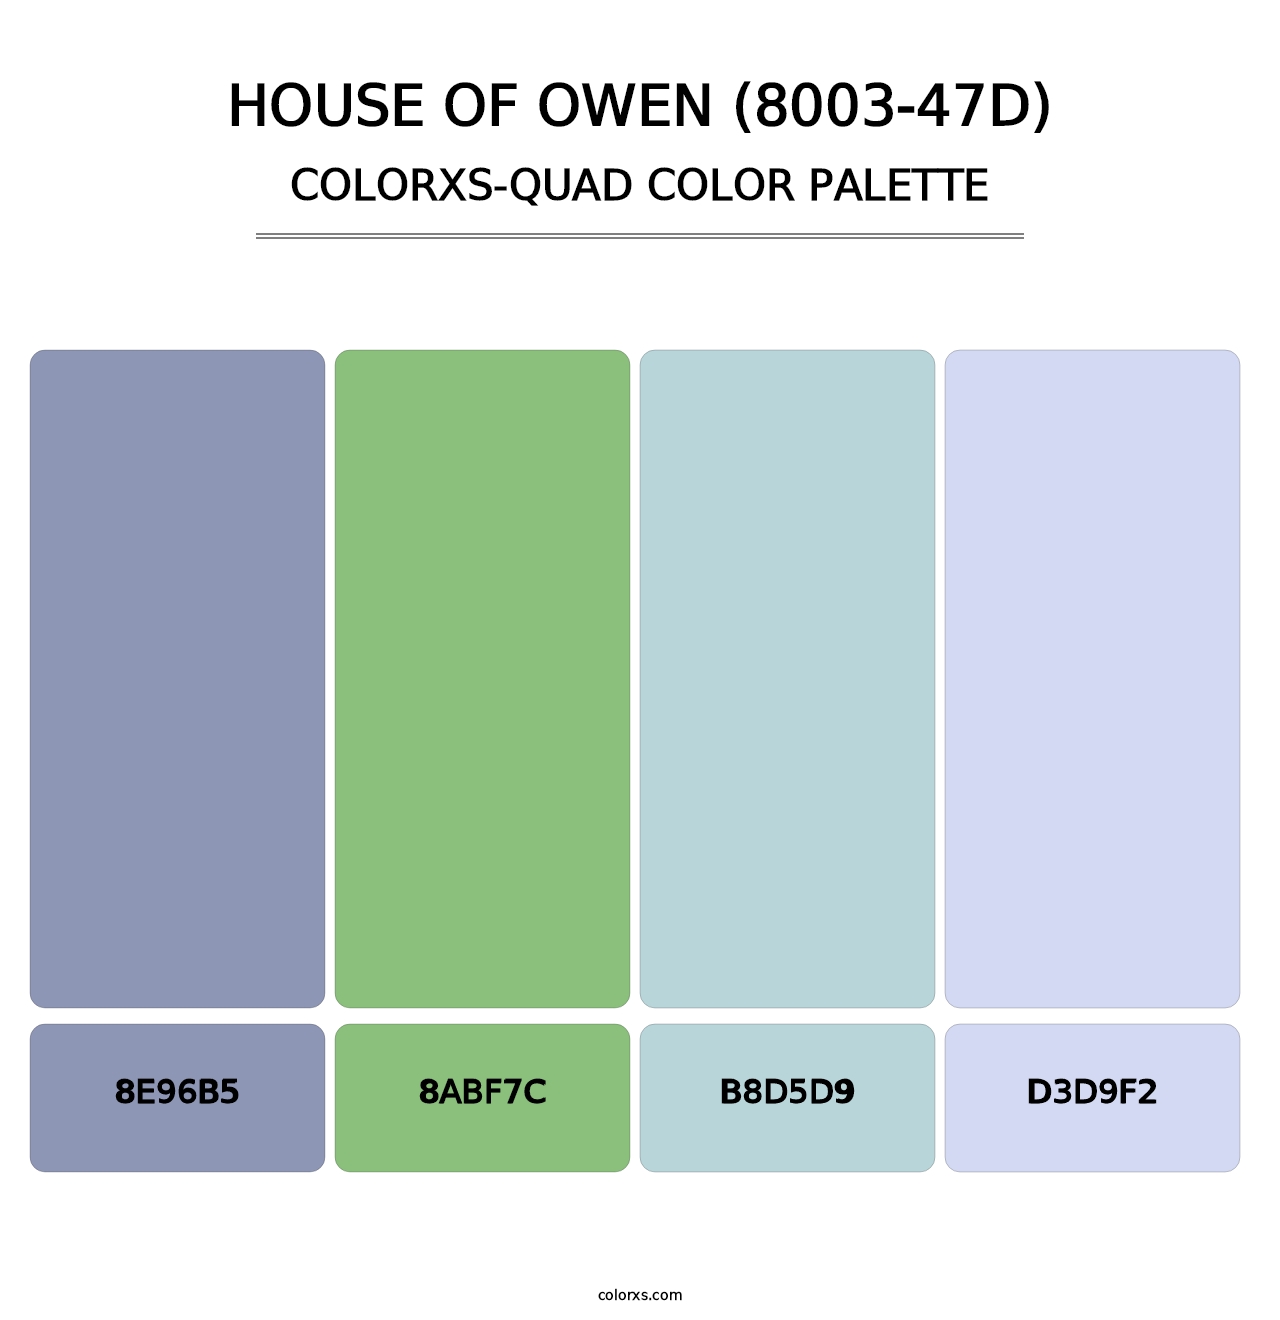 House of Owen (8003-47D) - Colorxs Quad Palette